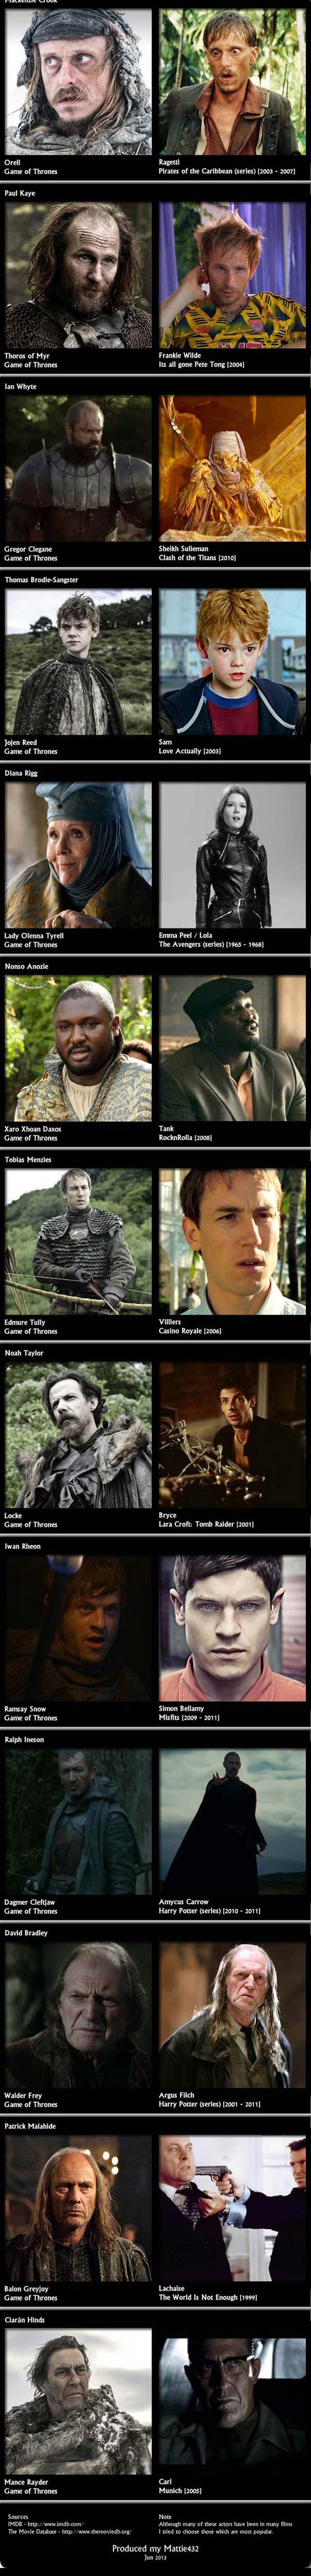 Οι ηθοποιοί του Game Of Thrones σε προηγούμενους ρόλους (5)